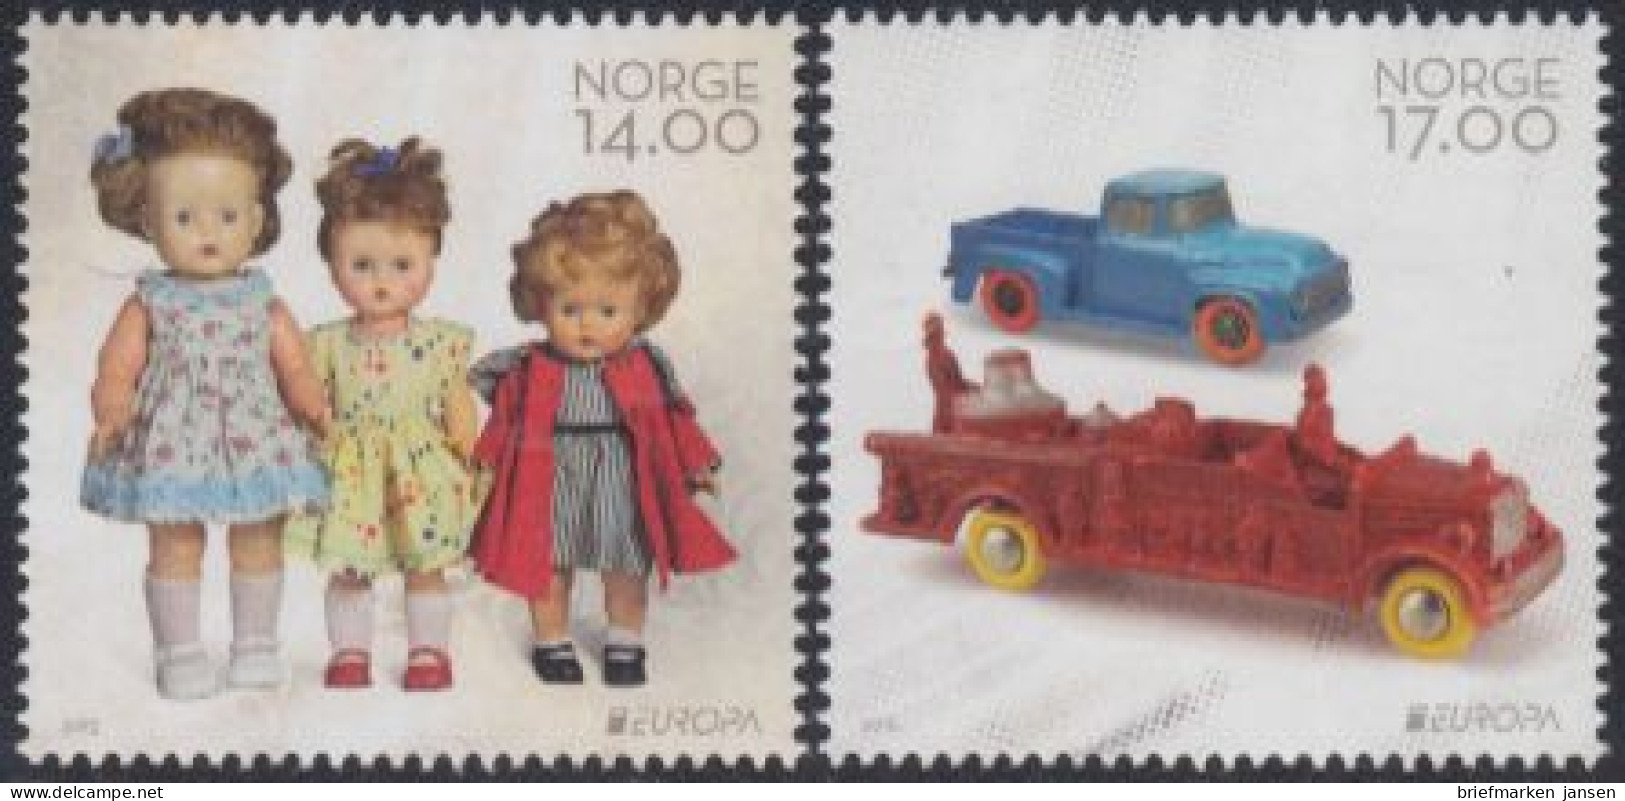 Norwegen Mi.Nr. 1884-85 Europa 15, Hist.Spielzeug, Puppen, Gummiautos (2 Werte) - Ungebraucht